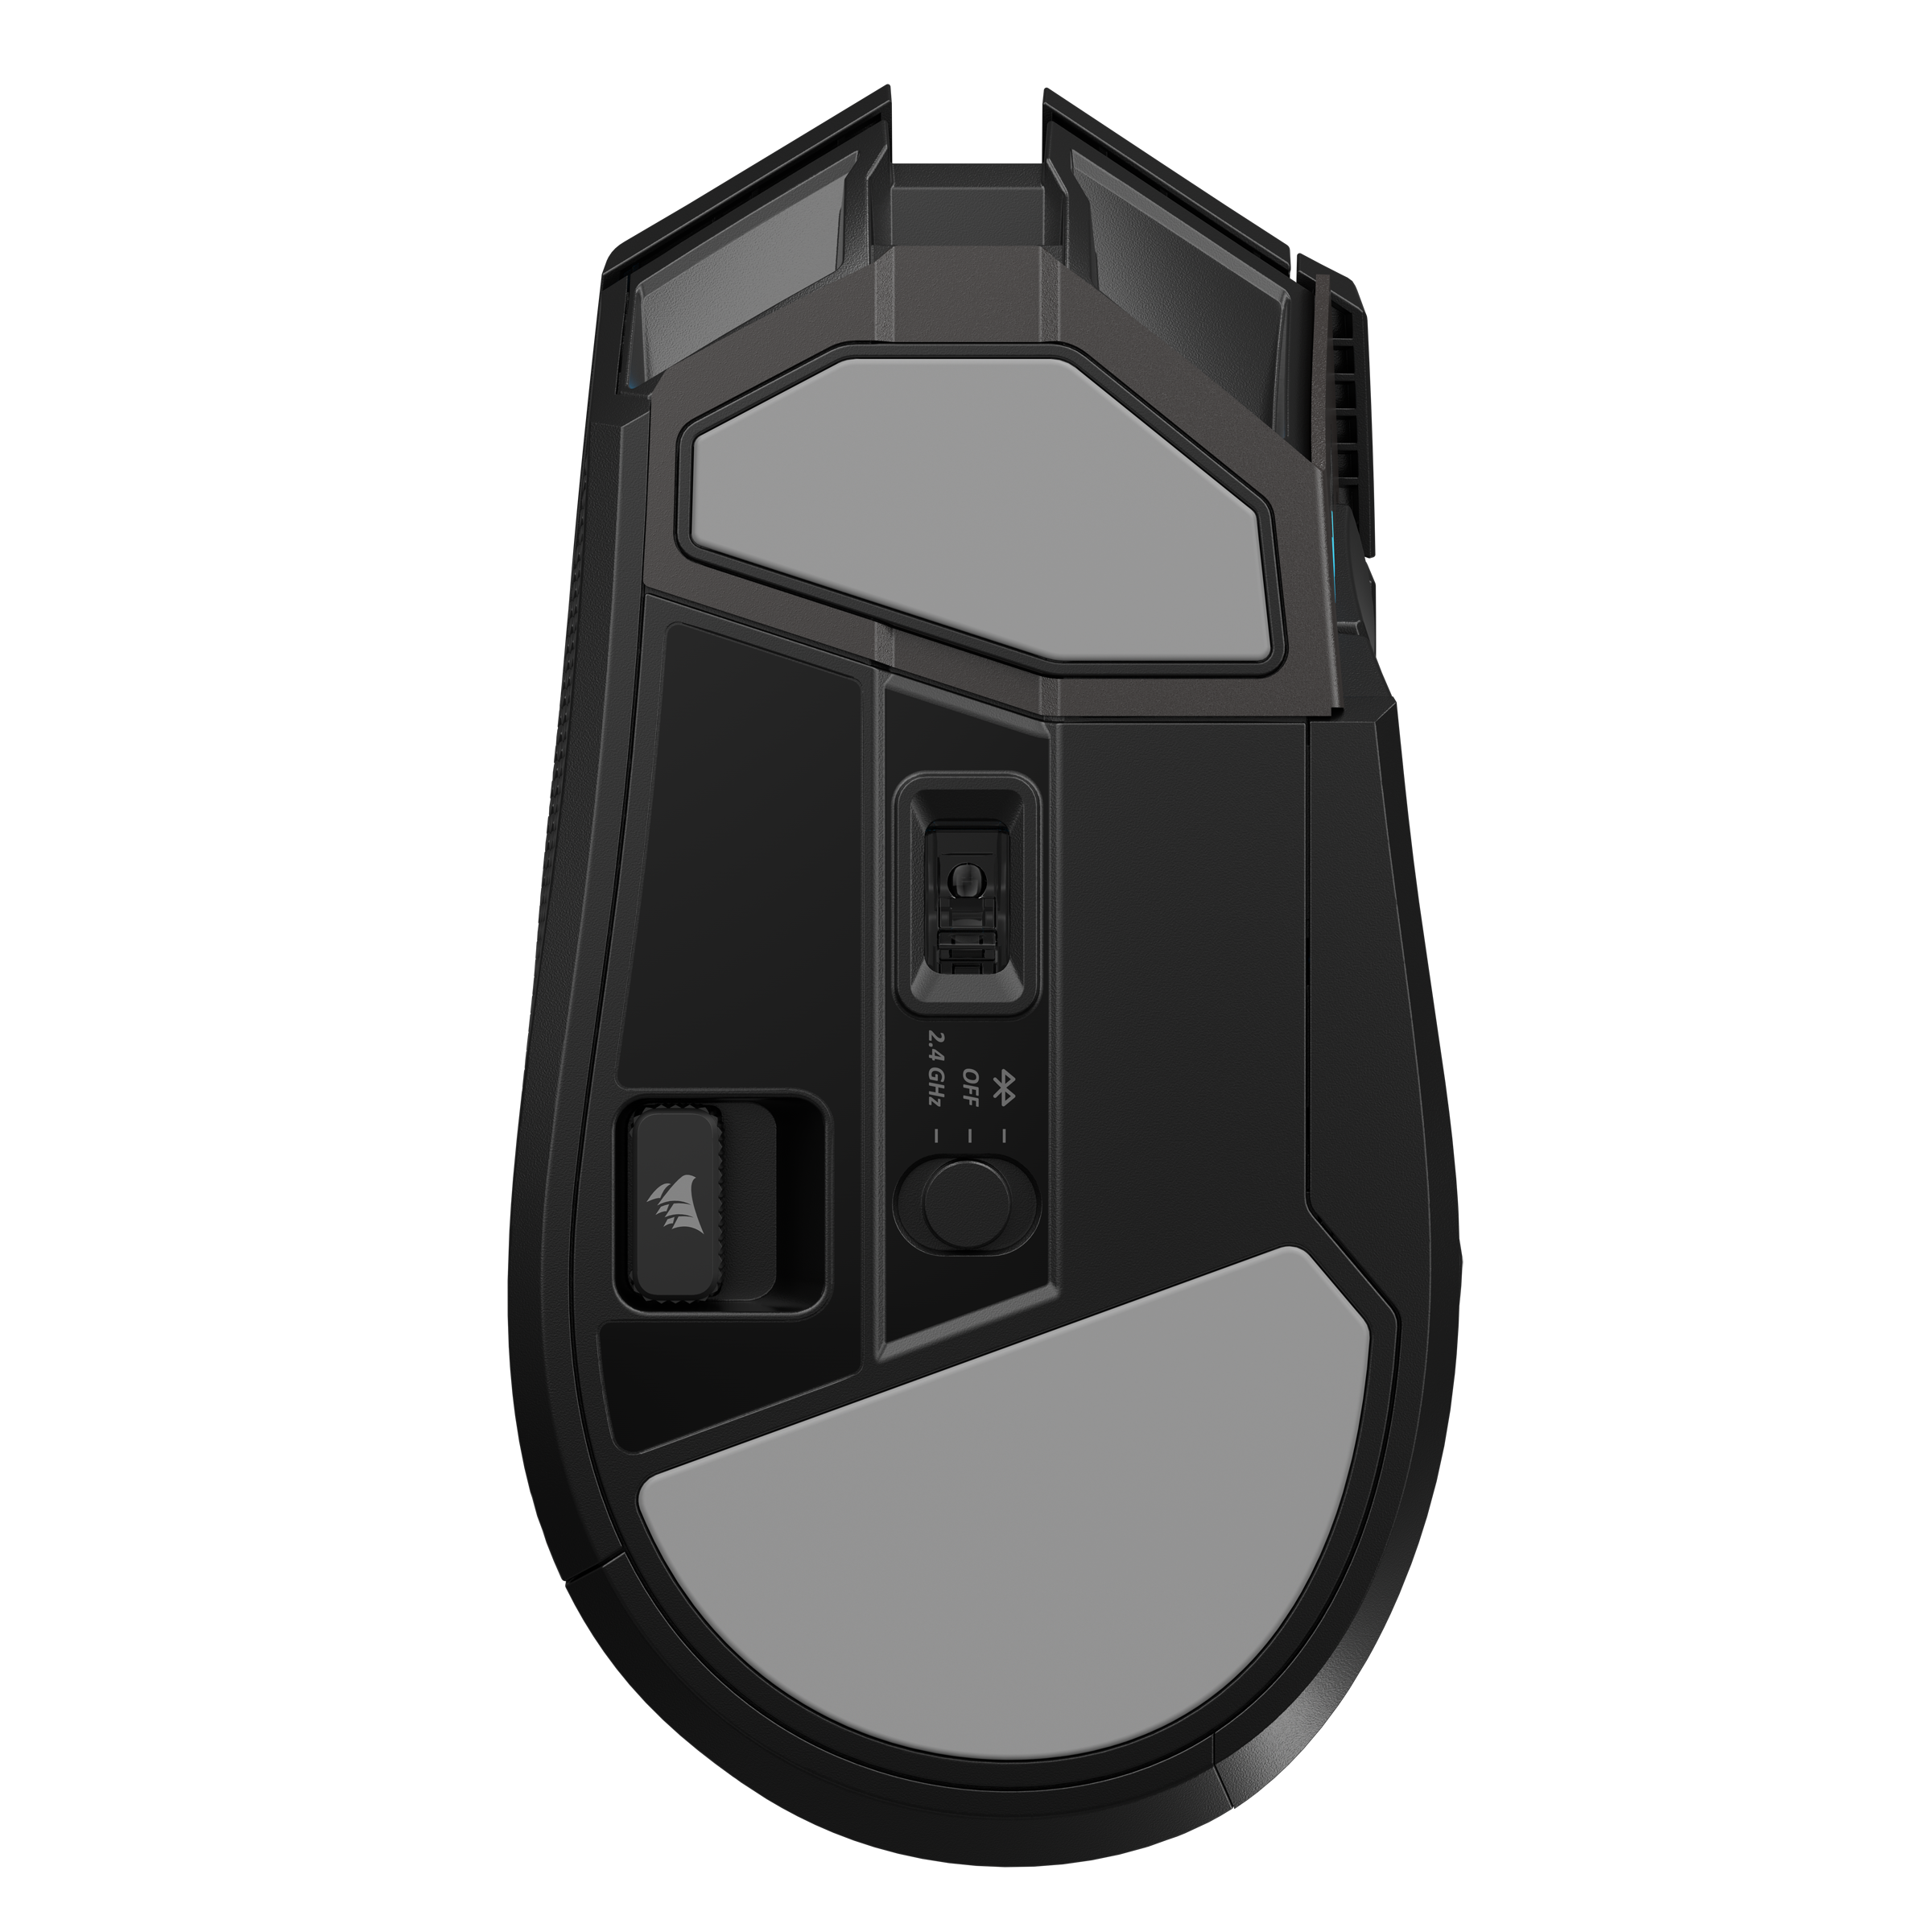 Corsair Gaming-Maus »DARKSTAR WIRELESS«, Bluetooth, 6-Tasten Seitencluster